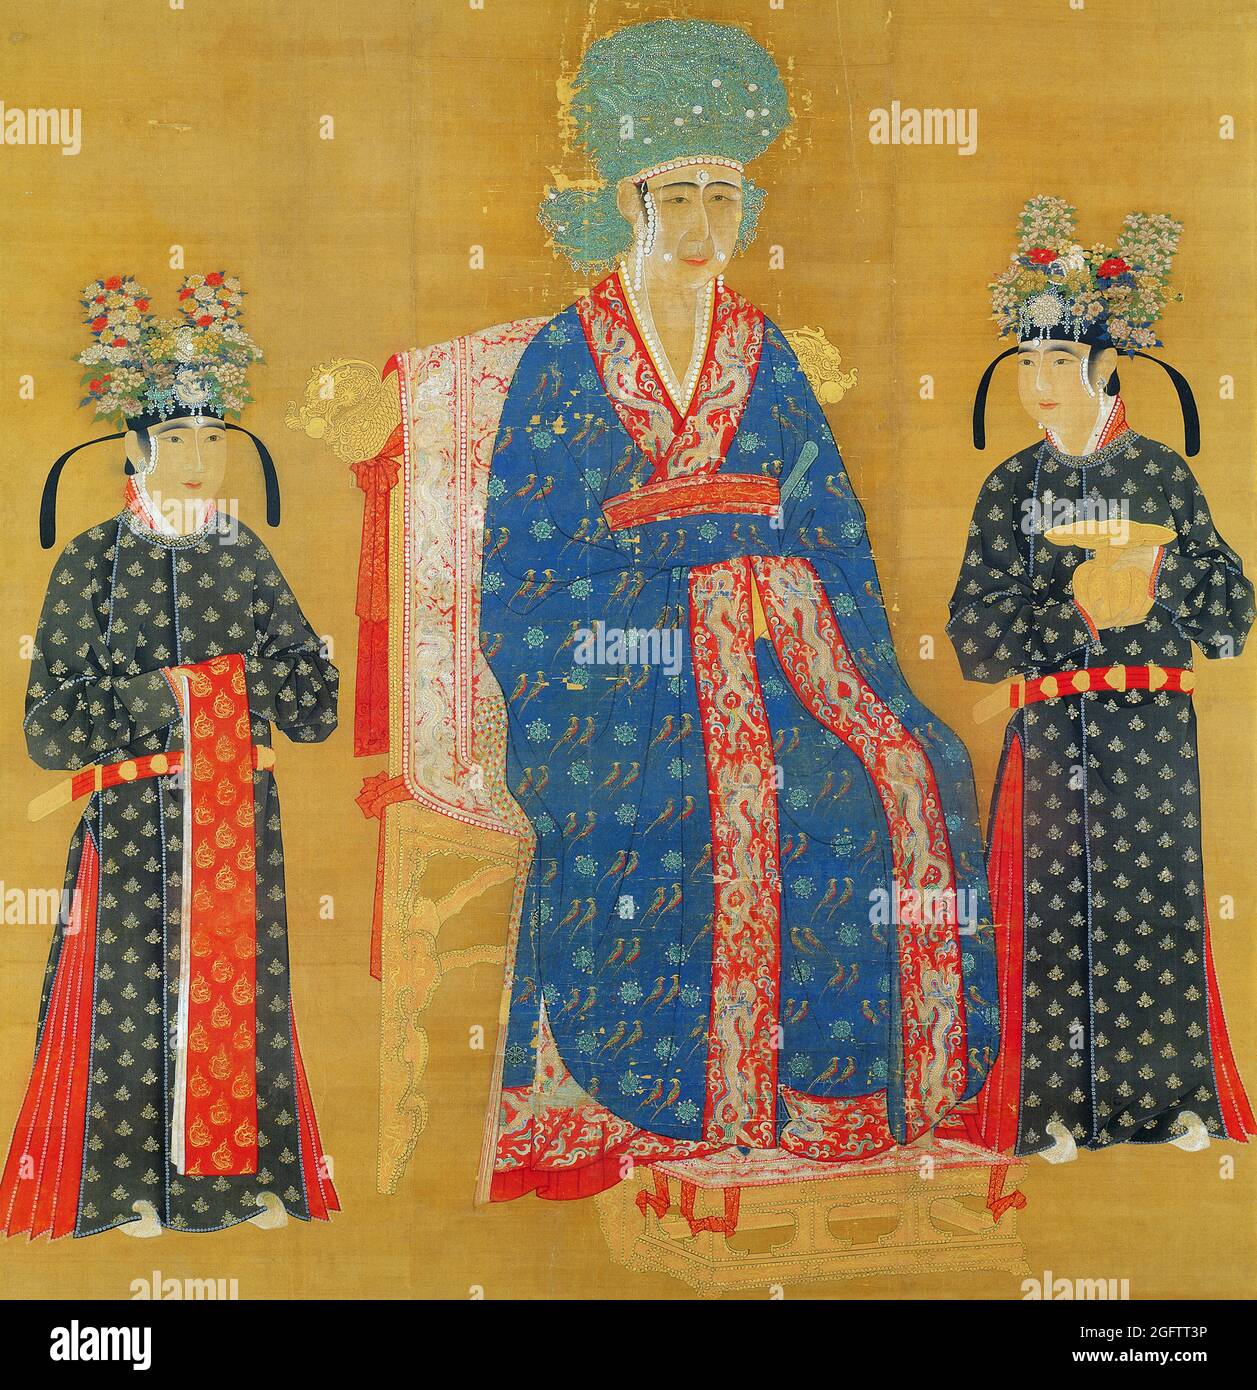 Cina: Imperatrice Cao (1016-1079), consorte dell'Imperatore Renzong, 4° sovrano della Dinastia Song (r.1022-1063). Pittura a scorrimento sospesa, c. 1022-1063. L'imperatrice Cao, conosciuta anche come Cisheng Guangxiang, fu la consorte dell'Imperatore Renzong. Salì al rango di imperatrice dopo che Renzong pose la sua prima imperatrice, l'imperatrice Guo. Ben rispettata dai funzionari statali, aiutò a governare il regno quando l'imperatore era malato. Allo stesso modo, quando il suo figlio adottivo, l'imperatore Yingzong, salì al trono ed era gravemente malato, servì brevemente come reggente al suo posto. Foto Stock